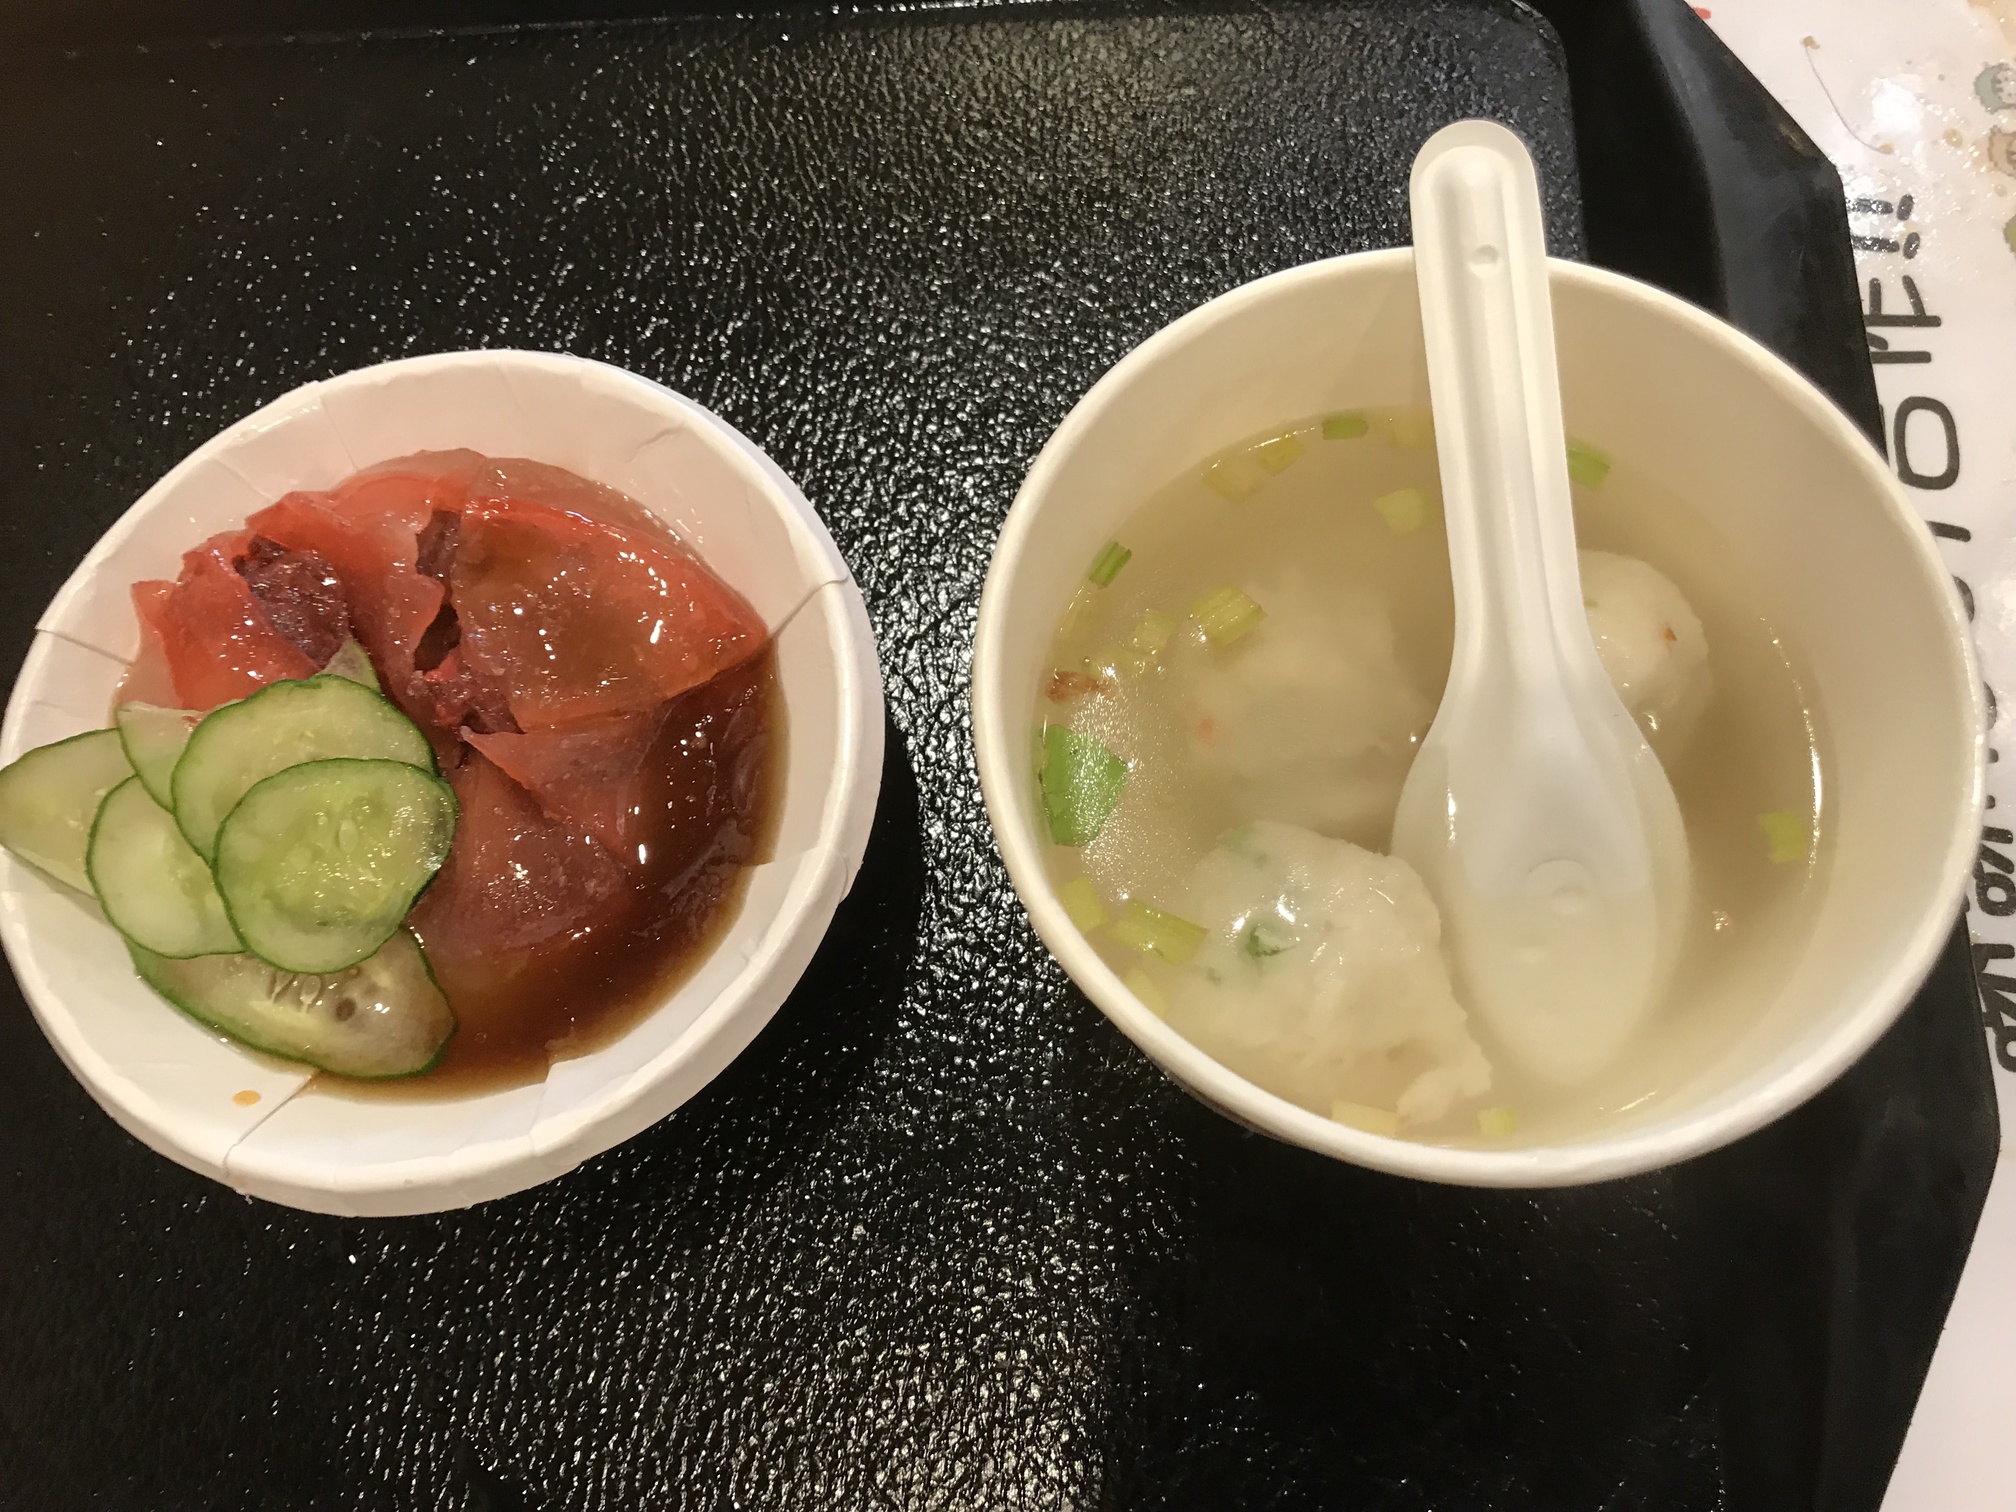 台北 18 九份で食べれるプルプル食感の謎の食べ物 紅糟肉圓 バーワン Teshiblog